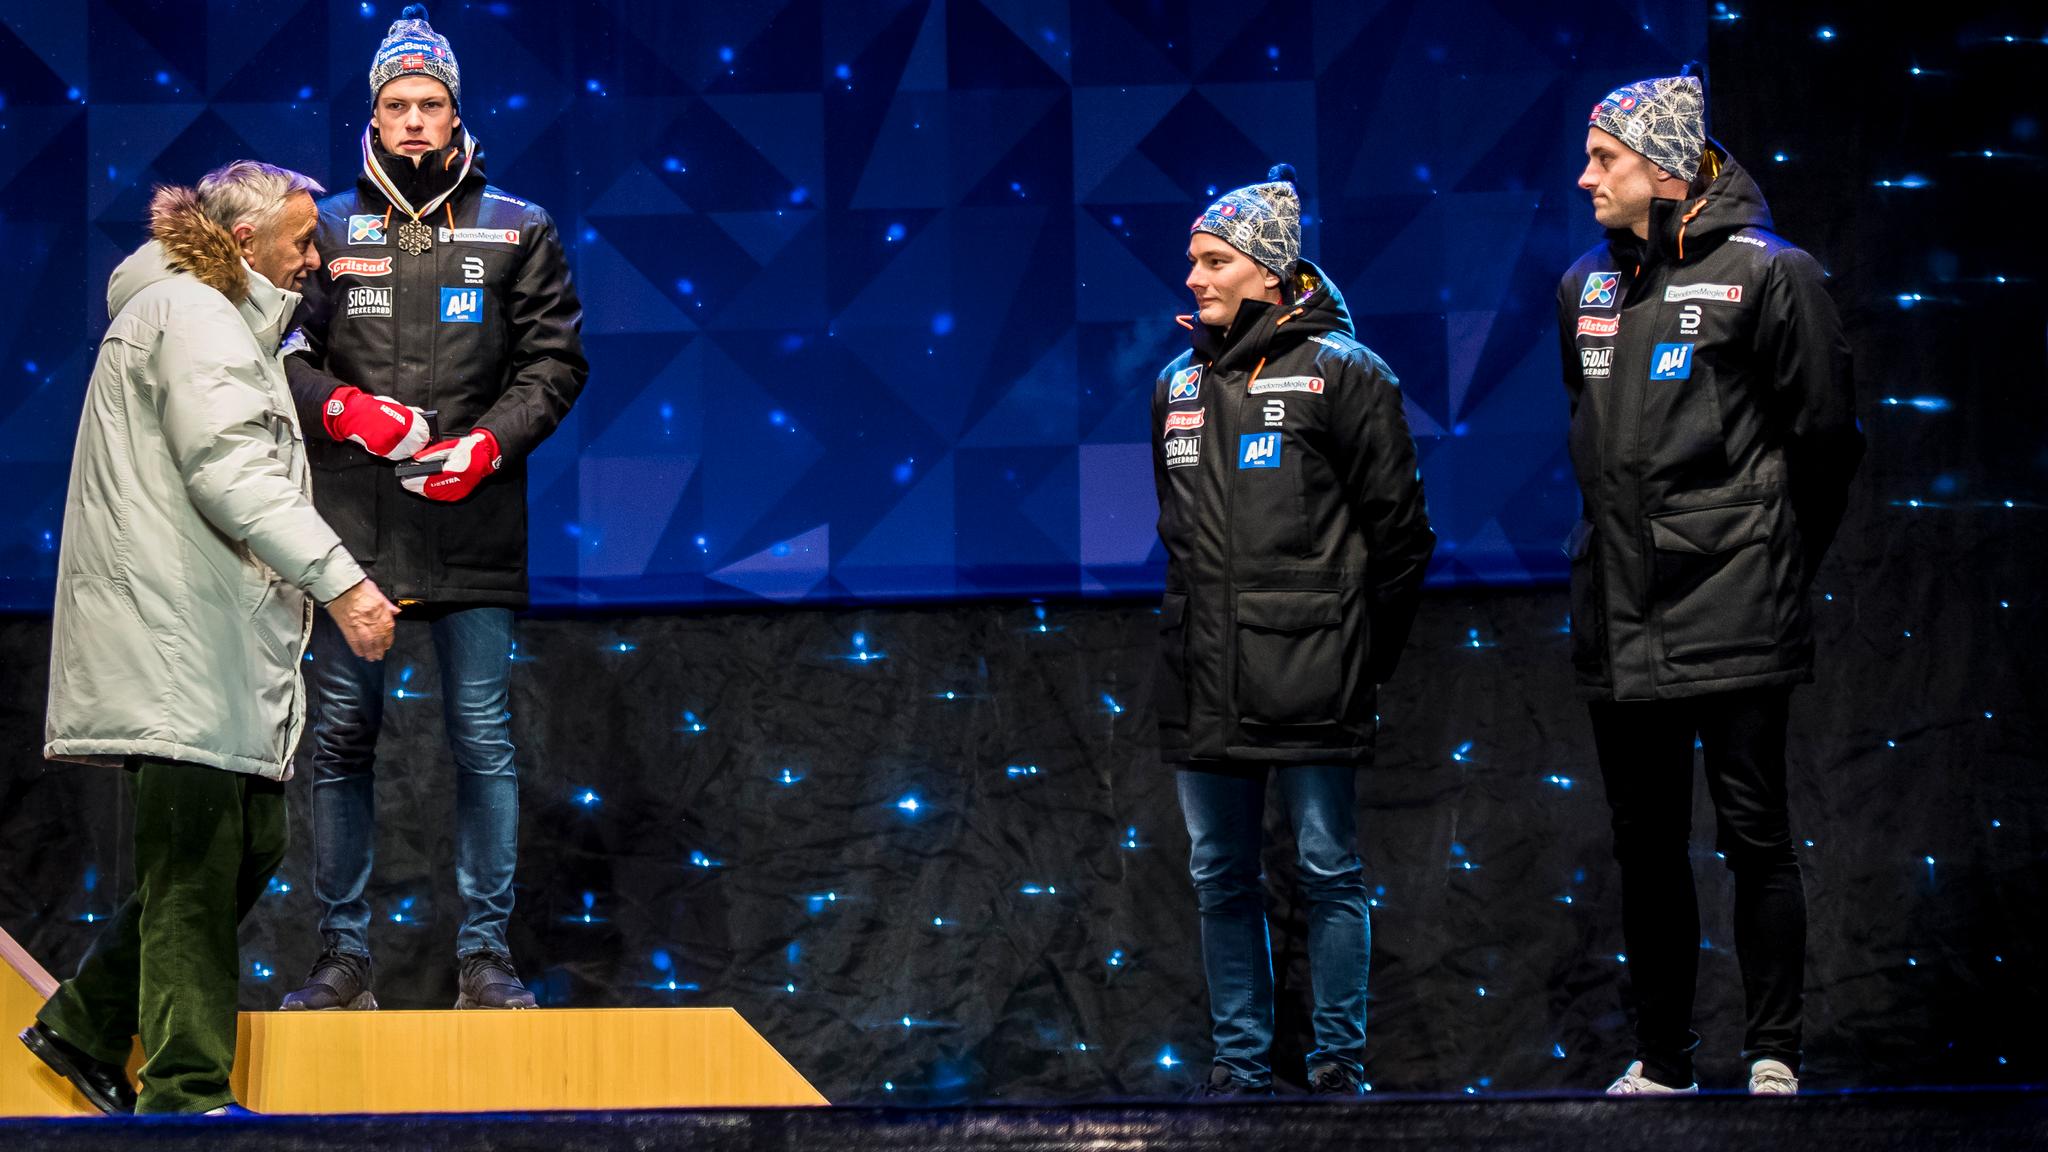 FIKK MEDALJE: Med Finn Hågen Krogh og Petter Northug (til høyre) som tilskuere fikk Johannes Høsflot Klæbo bronsemedaljen utdelt av FIS-president Gian Franco Kasper.